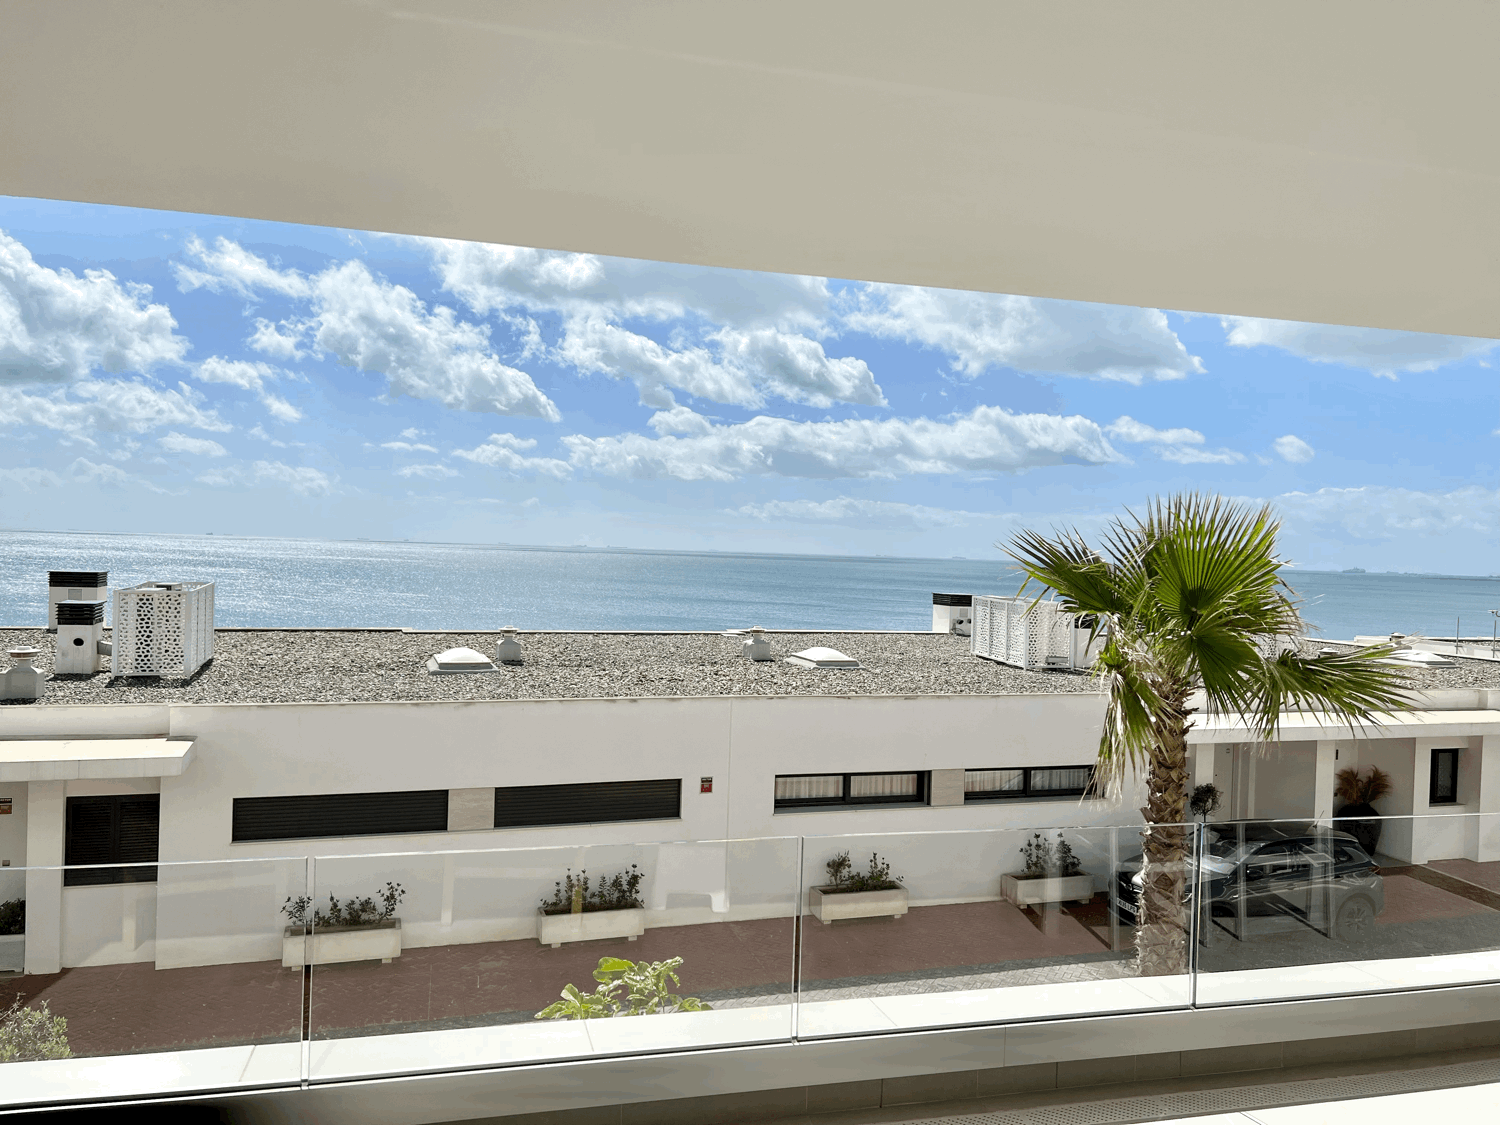 Exclusivo apartamento de dos dormitorios en primera linea de playa y campo de golf